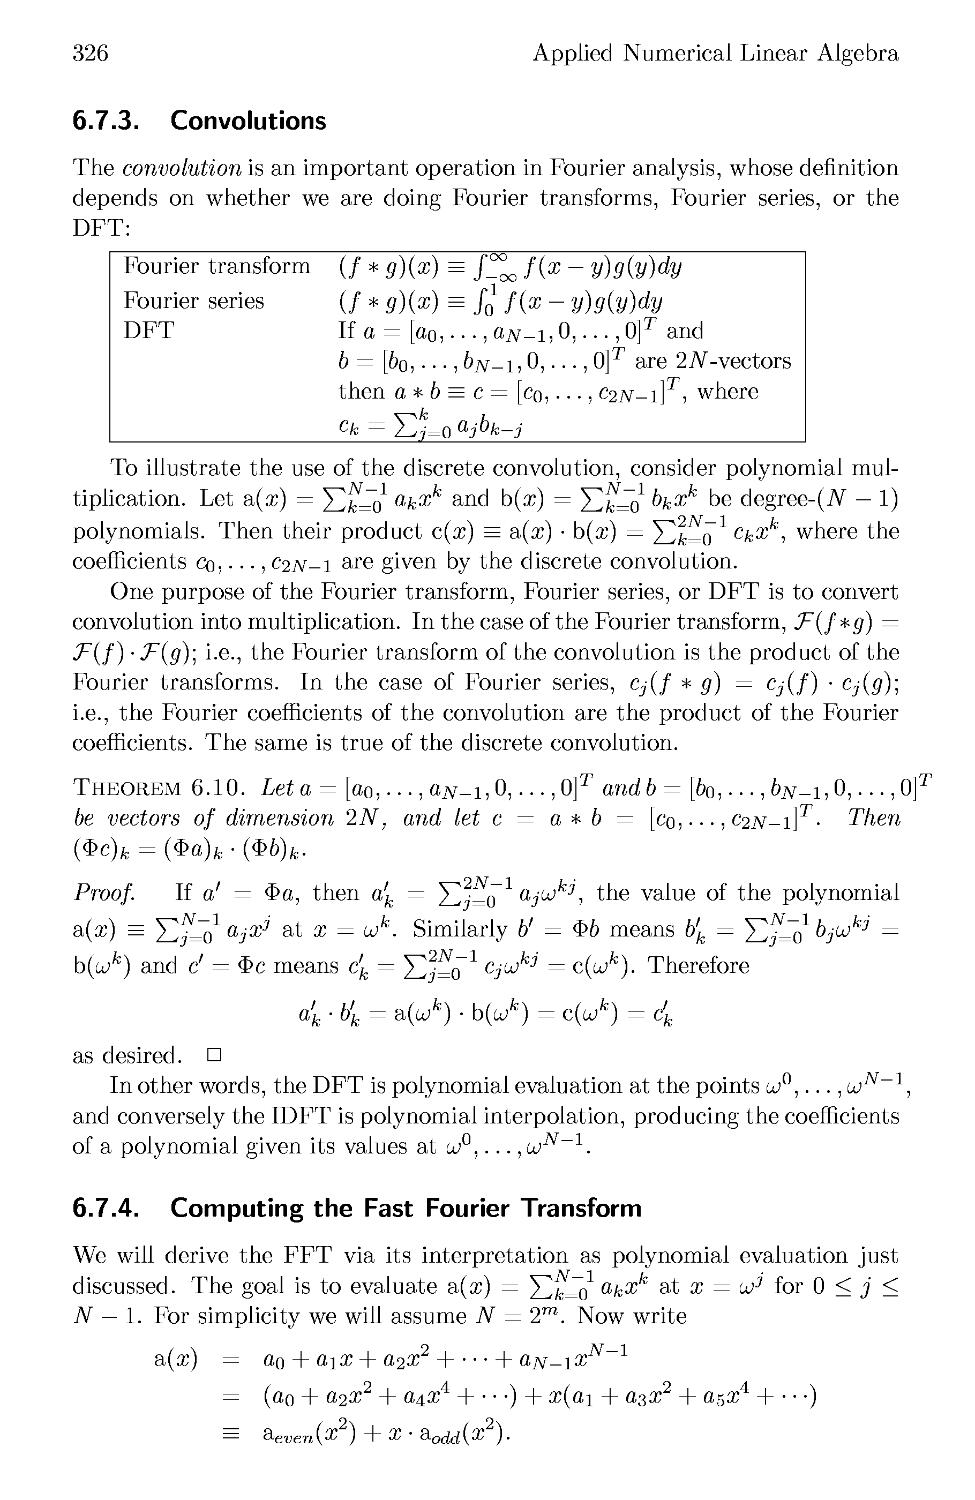 6.7.3 Convolutions
6.7.4 Computing the Fast Fourier Transform